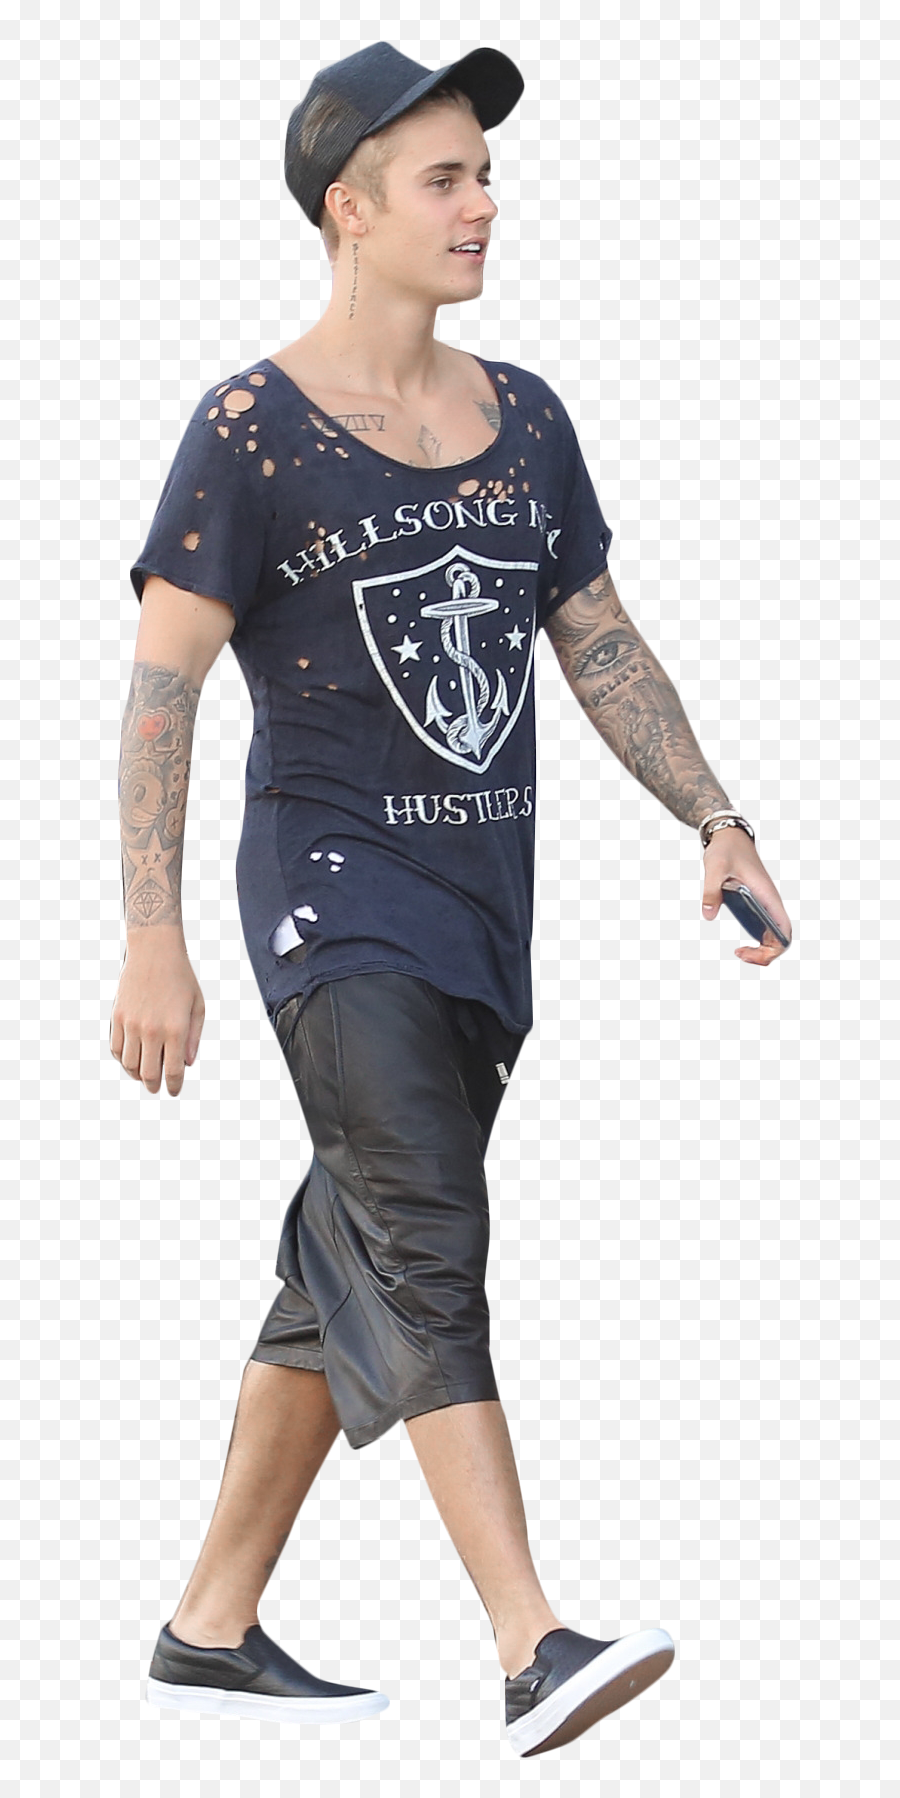 Justin Bieber Walking Png Image - Man Walking Down Stairs Png Emoji,Walking Png